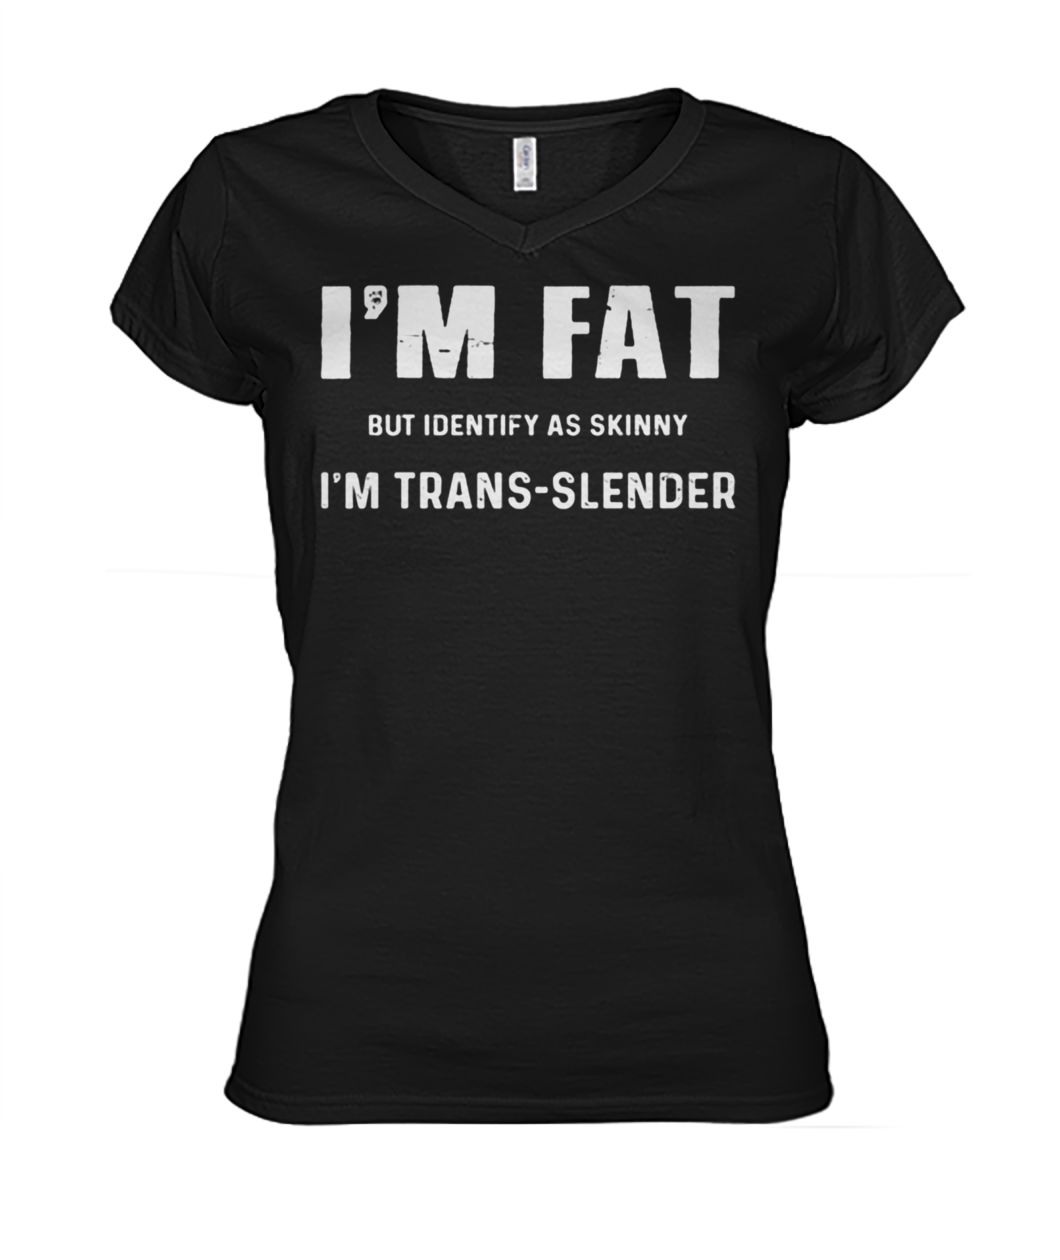 I'm fat but identify as skinny I am trans-slender women's v-neck